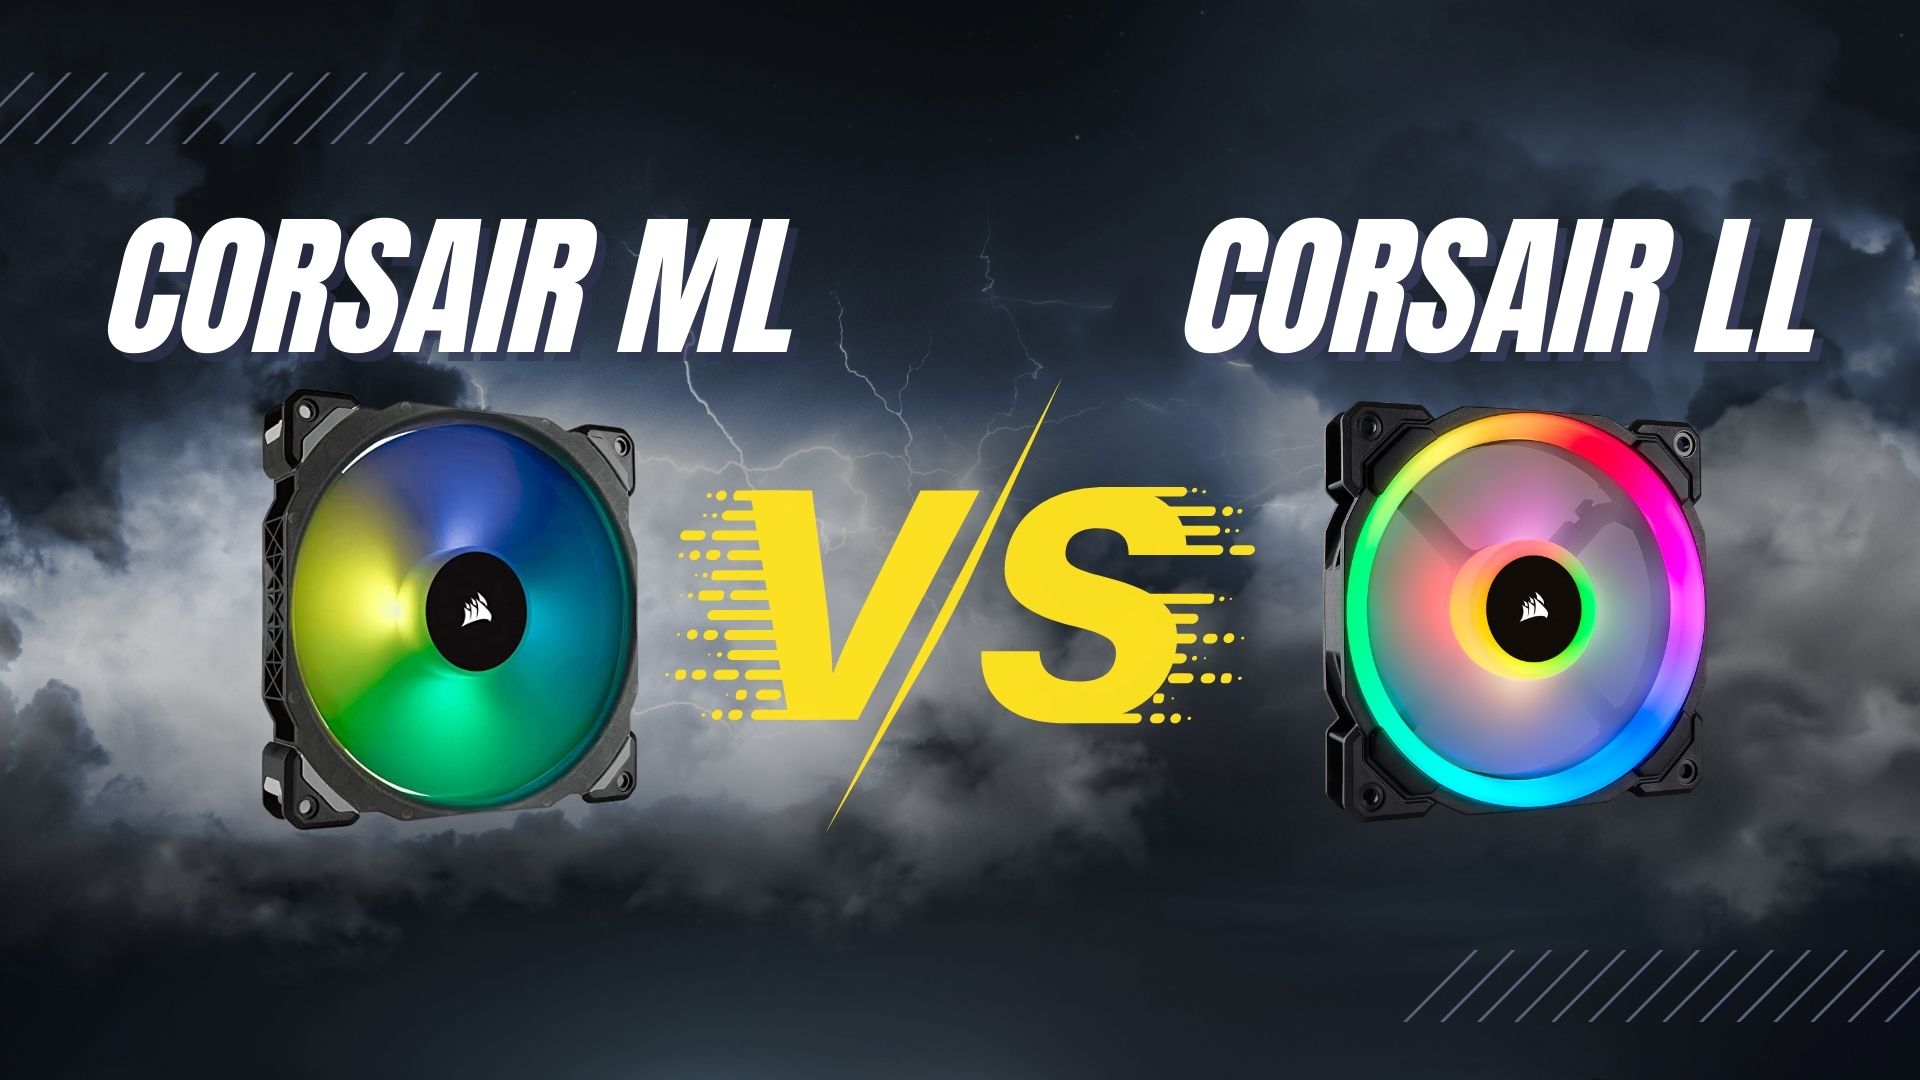 Corsair Ml vs Corsair ll